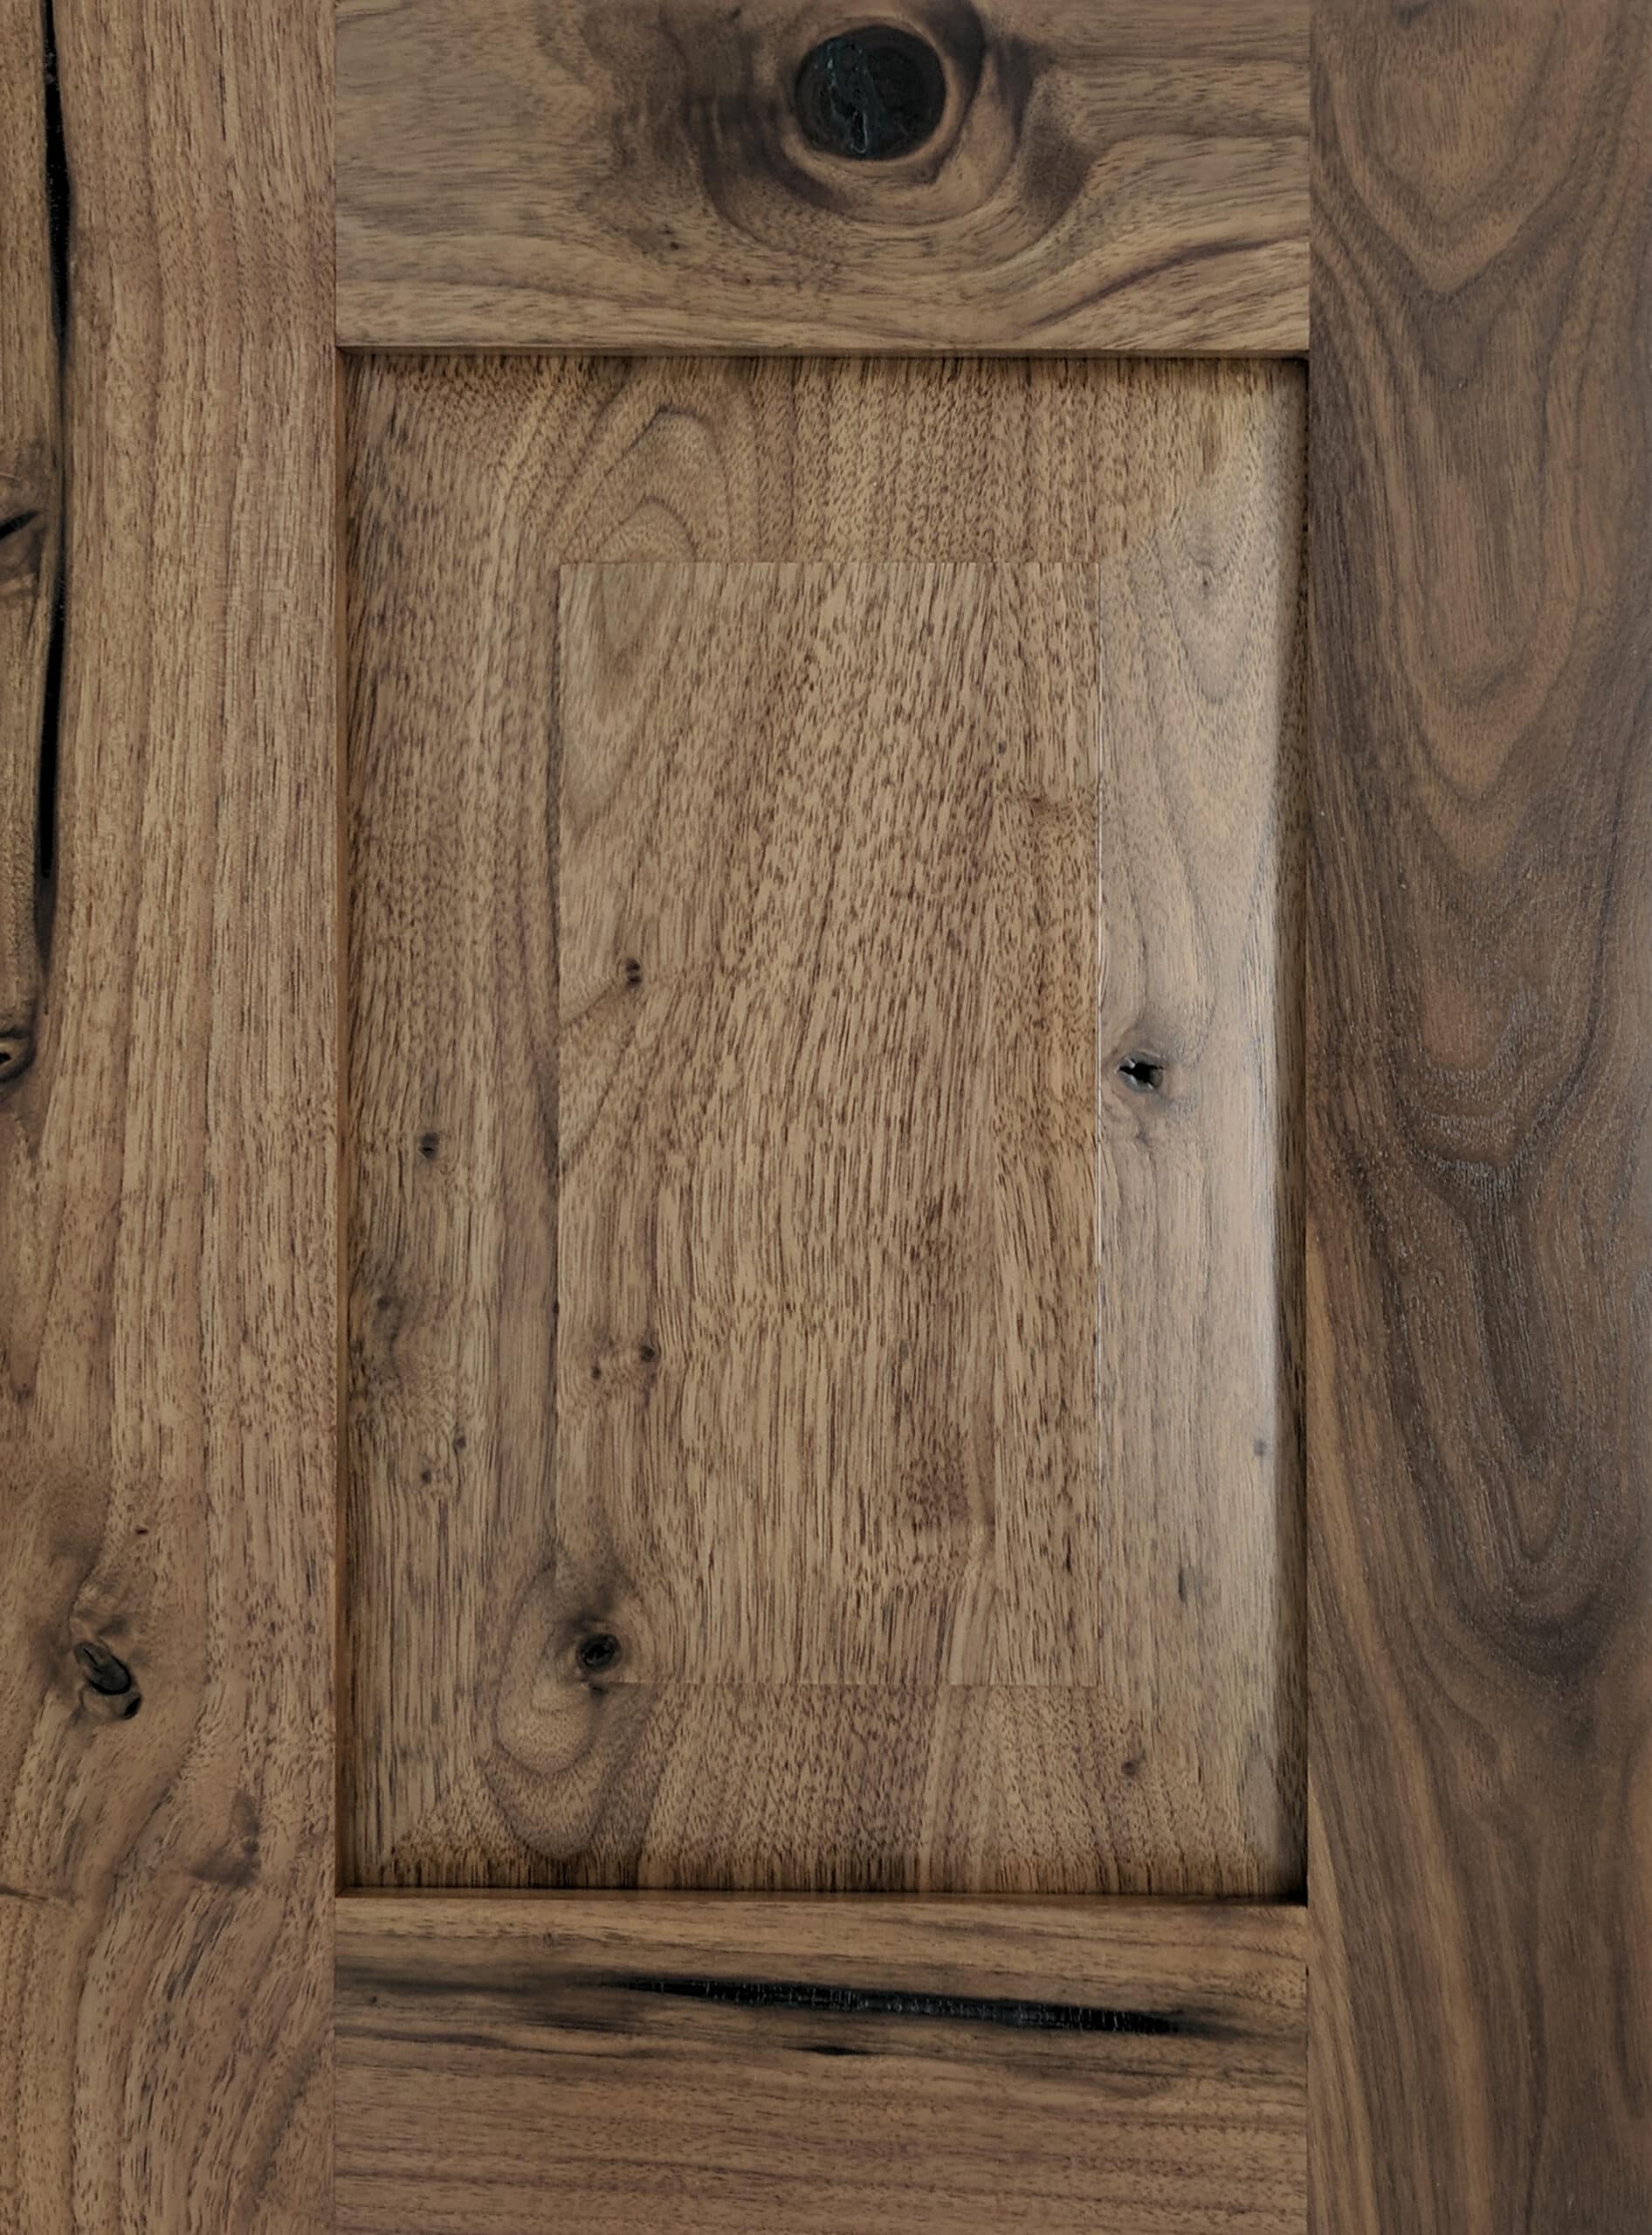 Layton Utah Rustic Walnut Natural Cabinet Doors